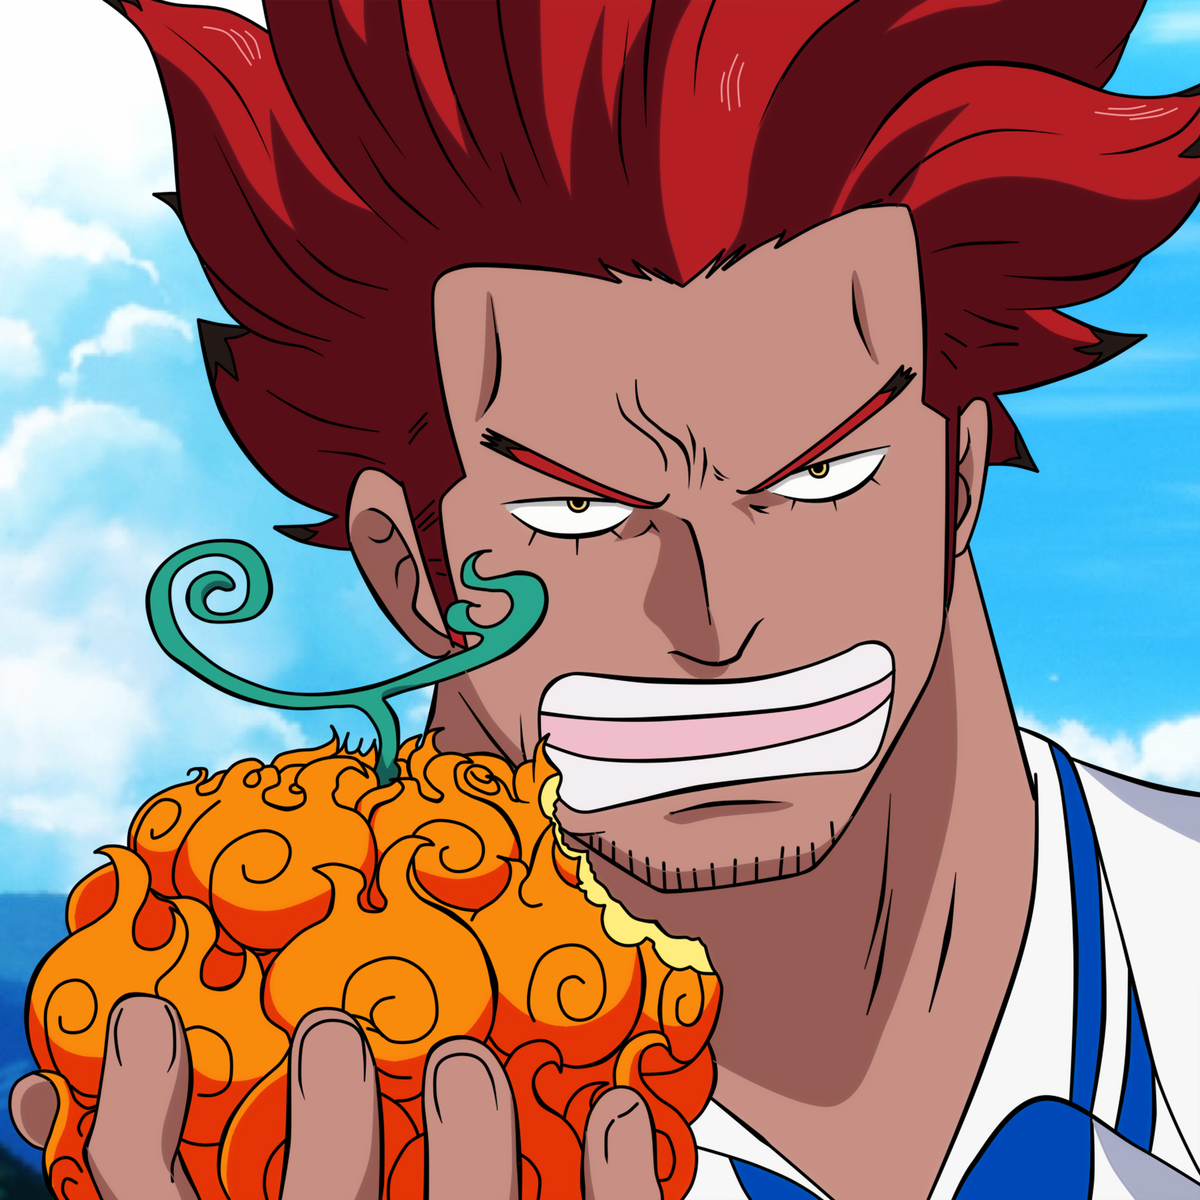 Hou Hou no Mi, One Piece Role-Play Wiki